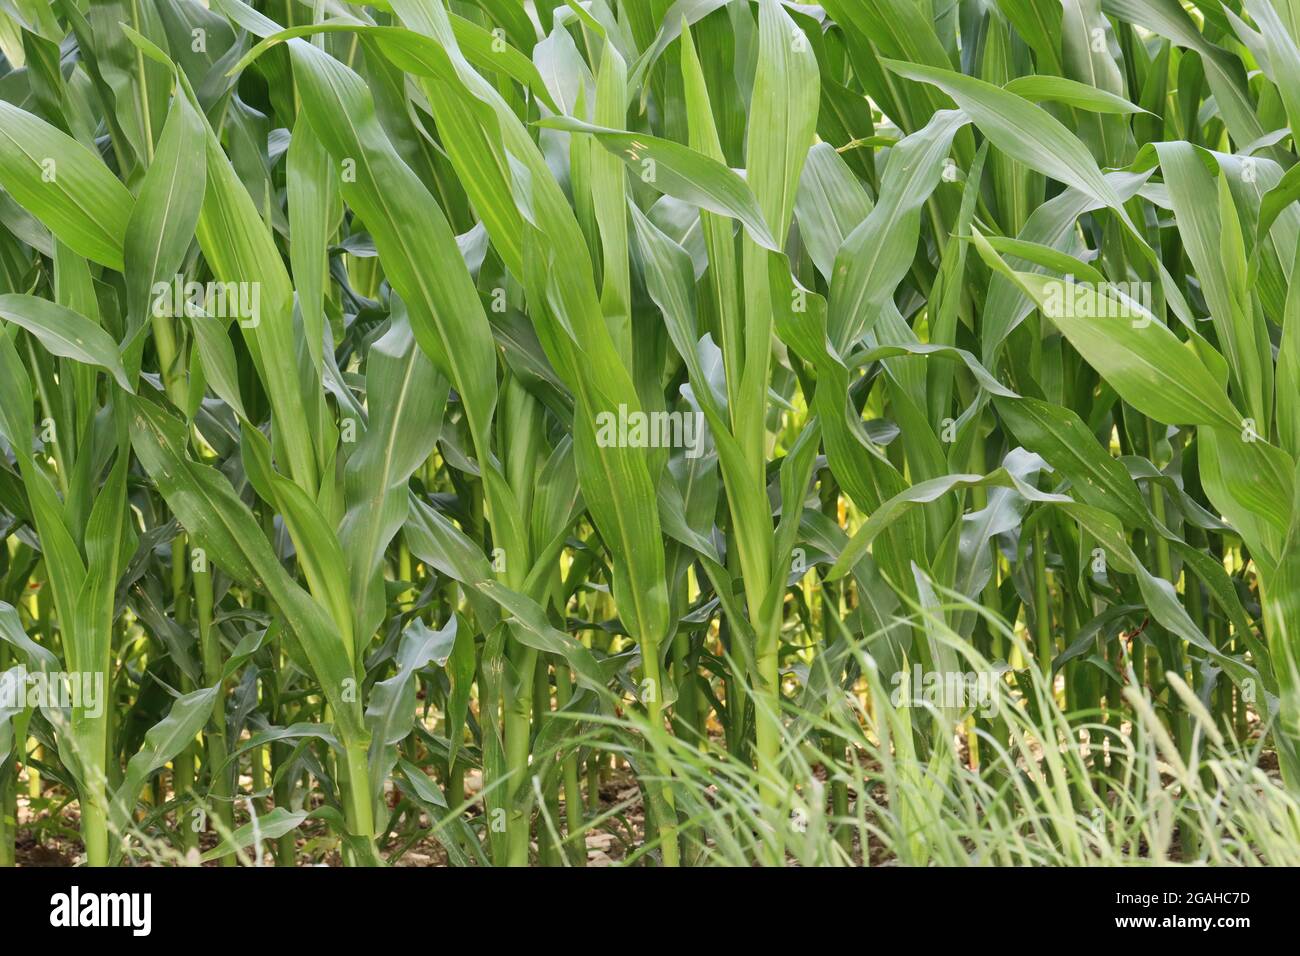 les jeunes plants de maïs sont alignés Banque D'Images